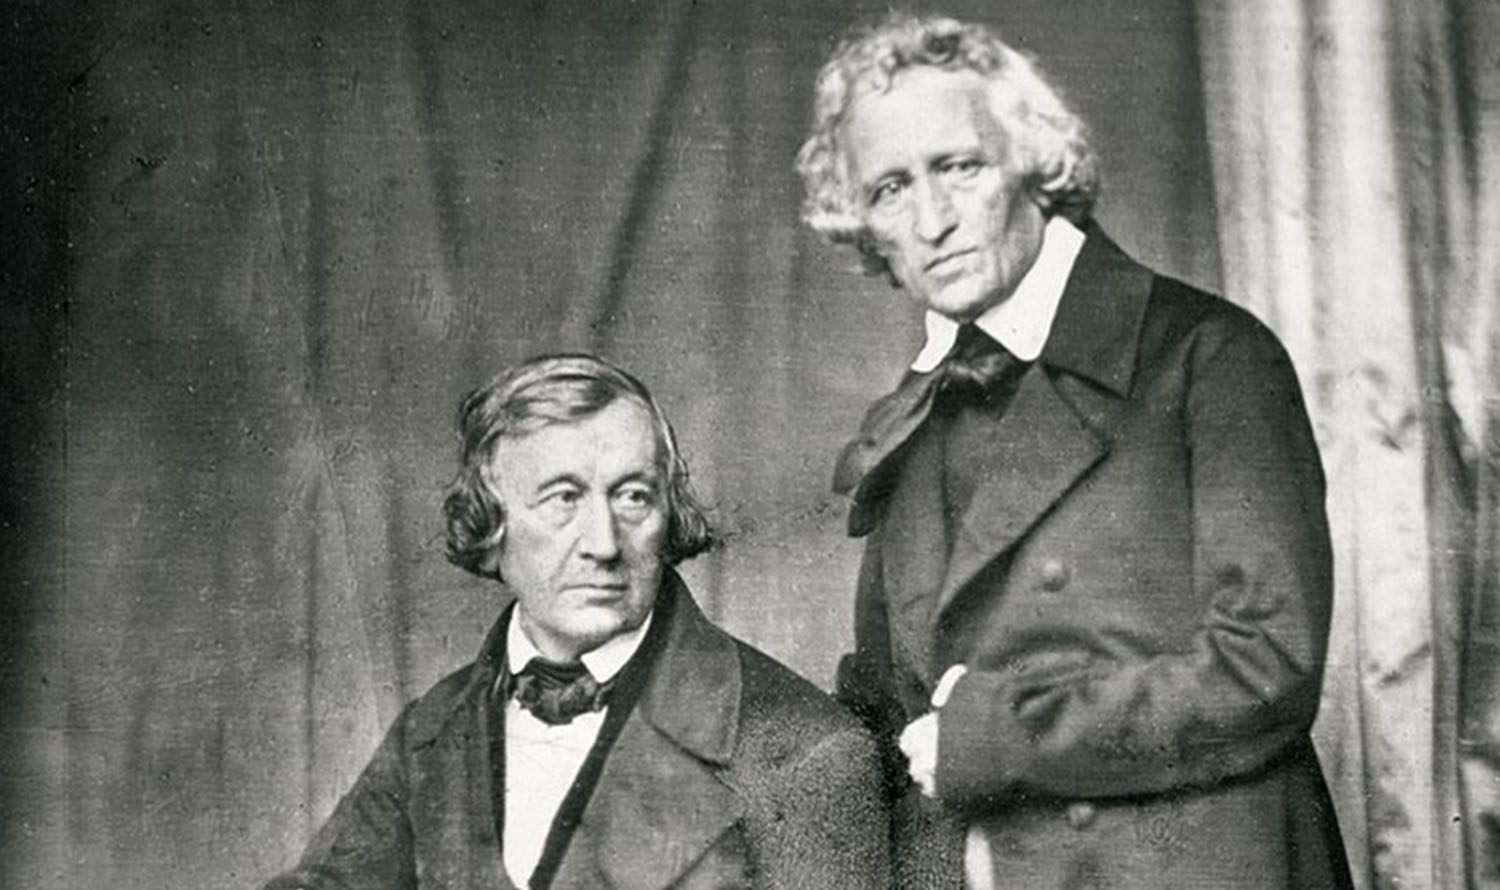 Czarno-biała fotografia braci Grimm.